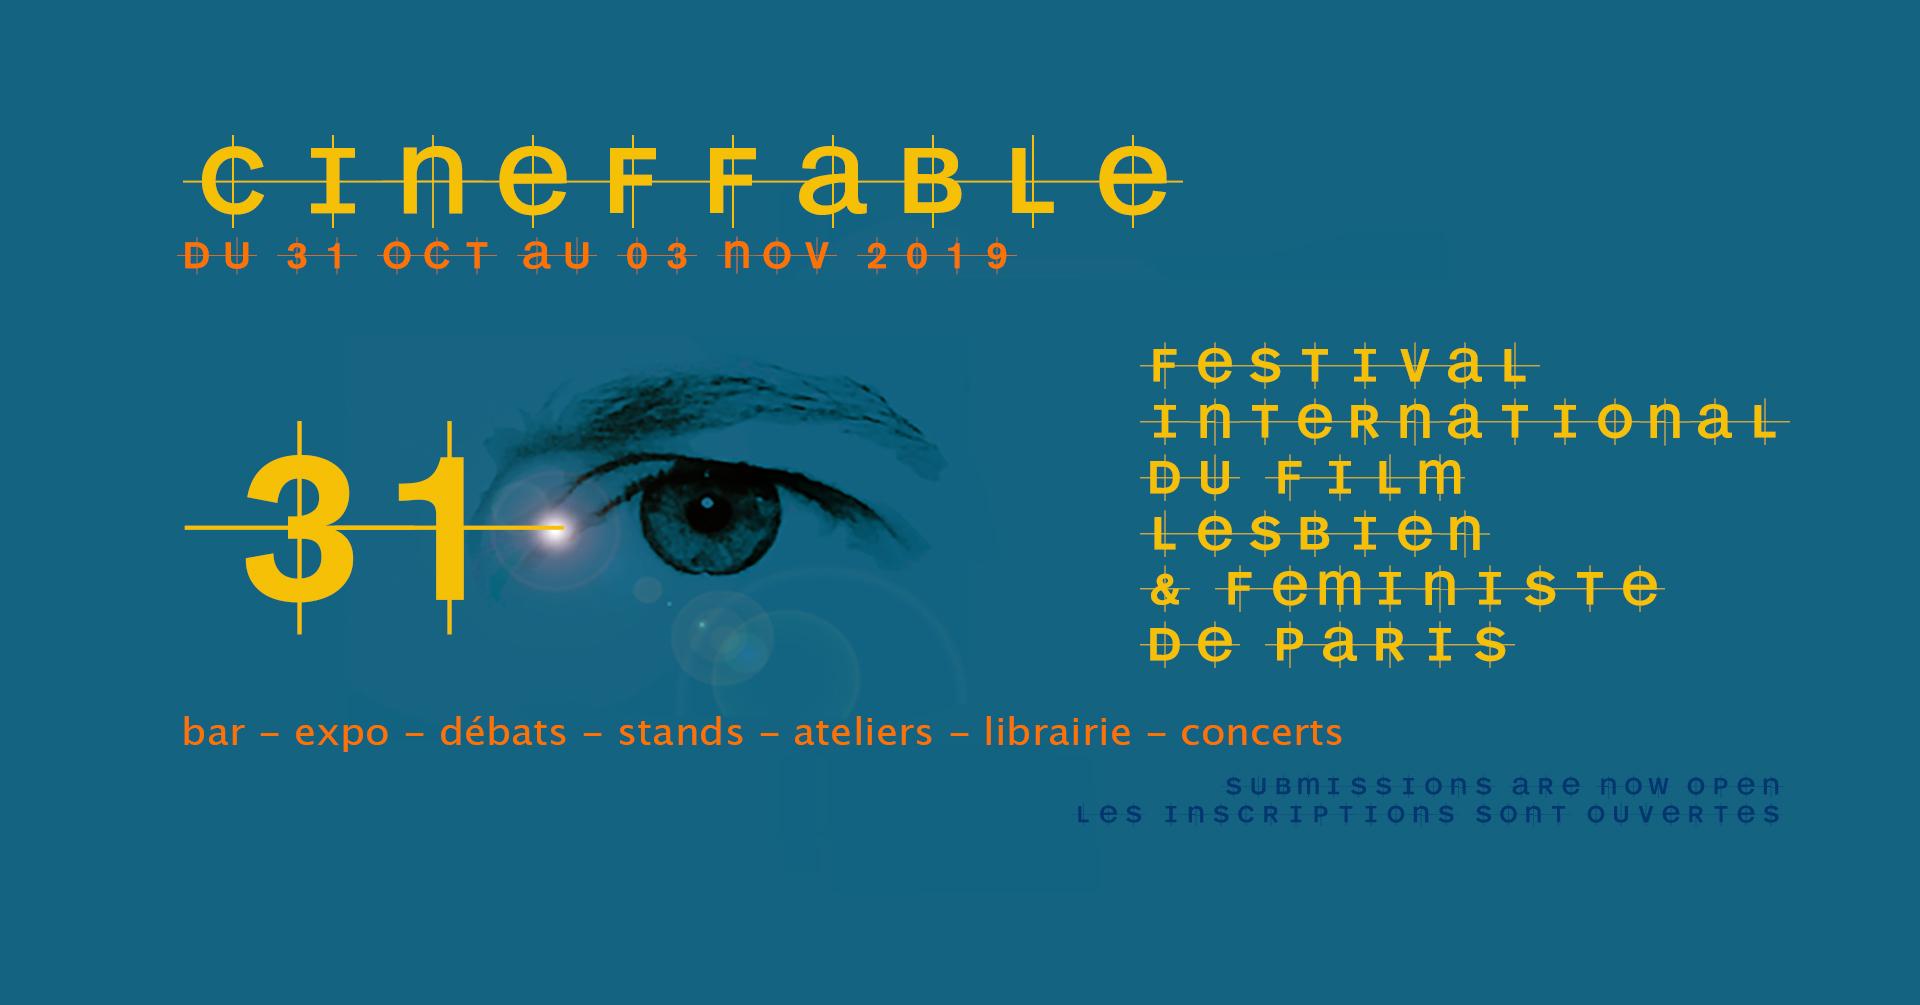 14 auteurs au Cineffable : FESTIVAL INTERNATIONAL DU FILM LESBIEN ET FÉMINISTE DE PARIS